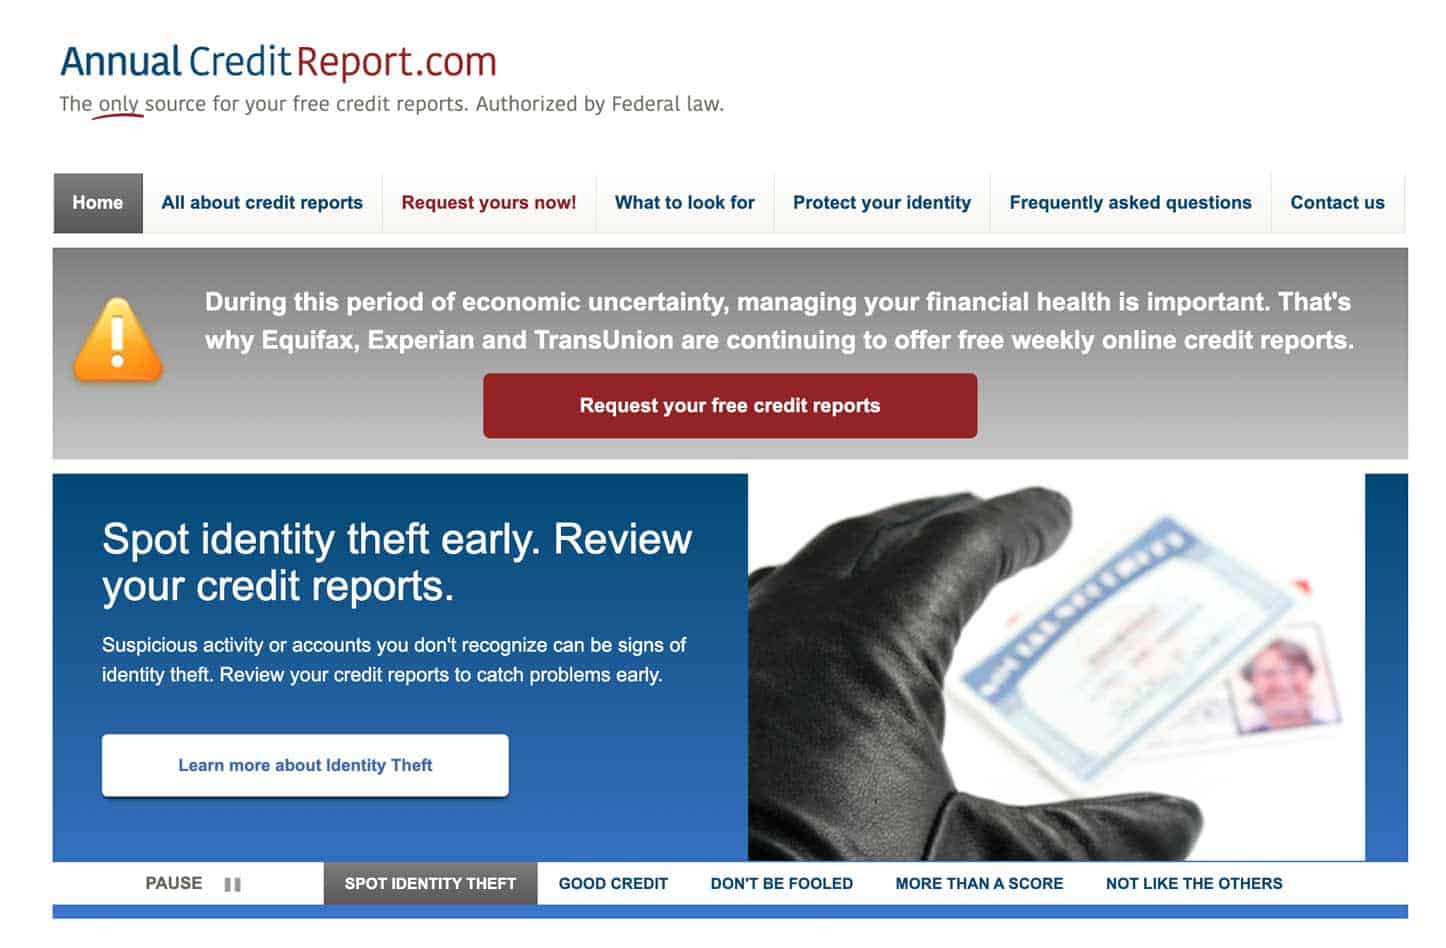 Screenshot from AnnualCreditReport website